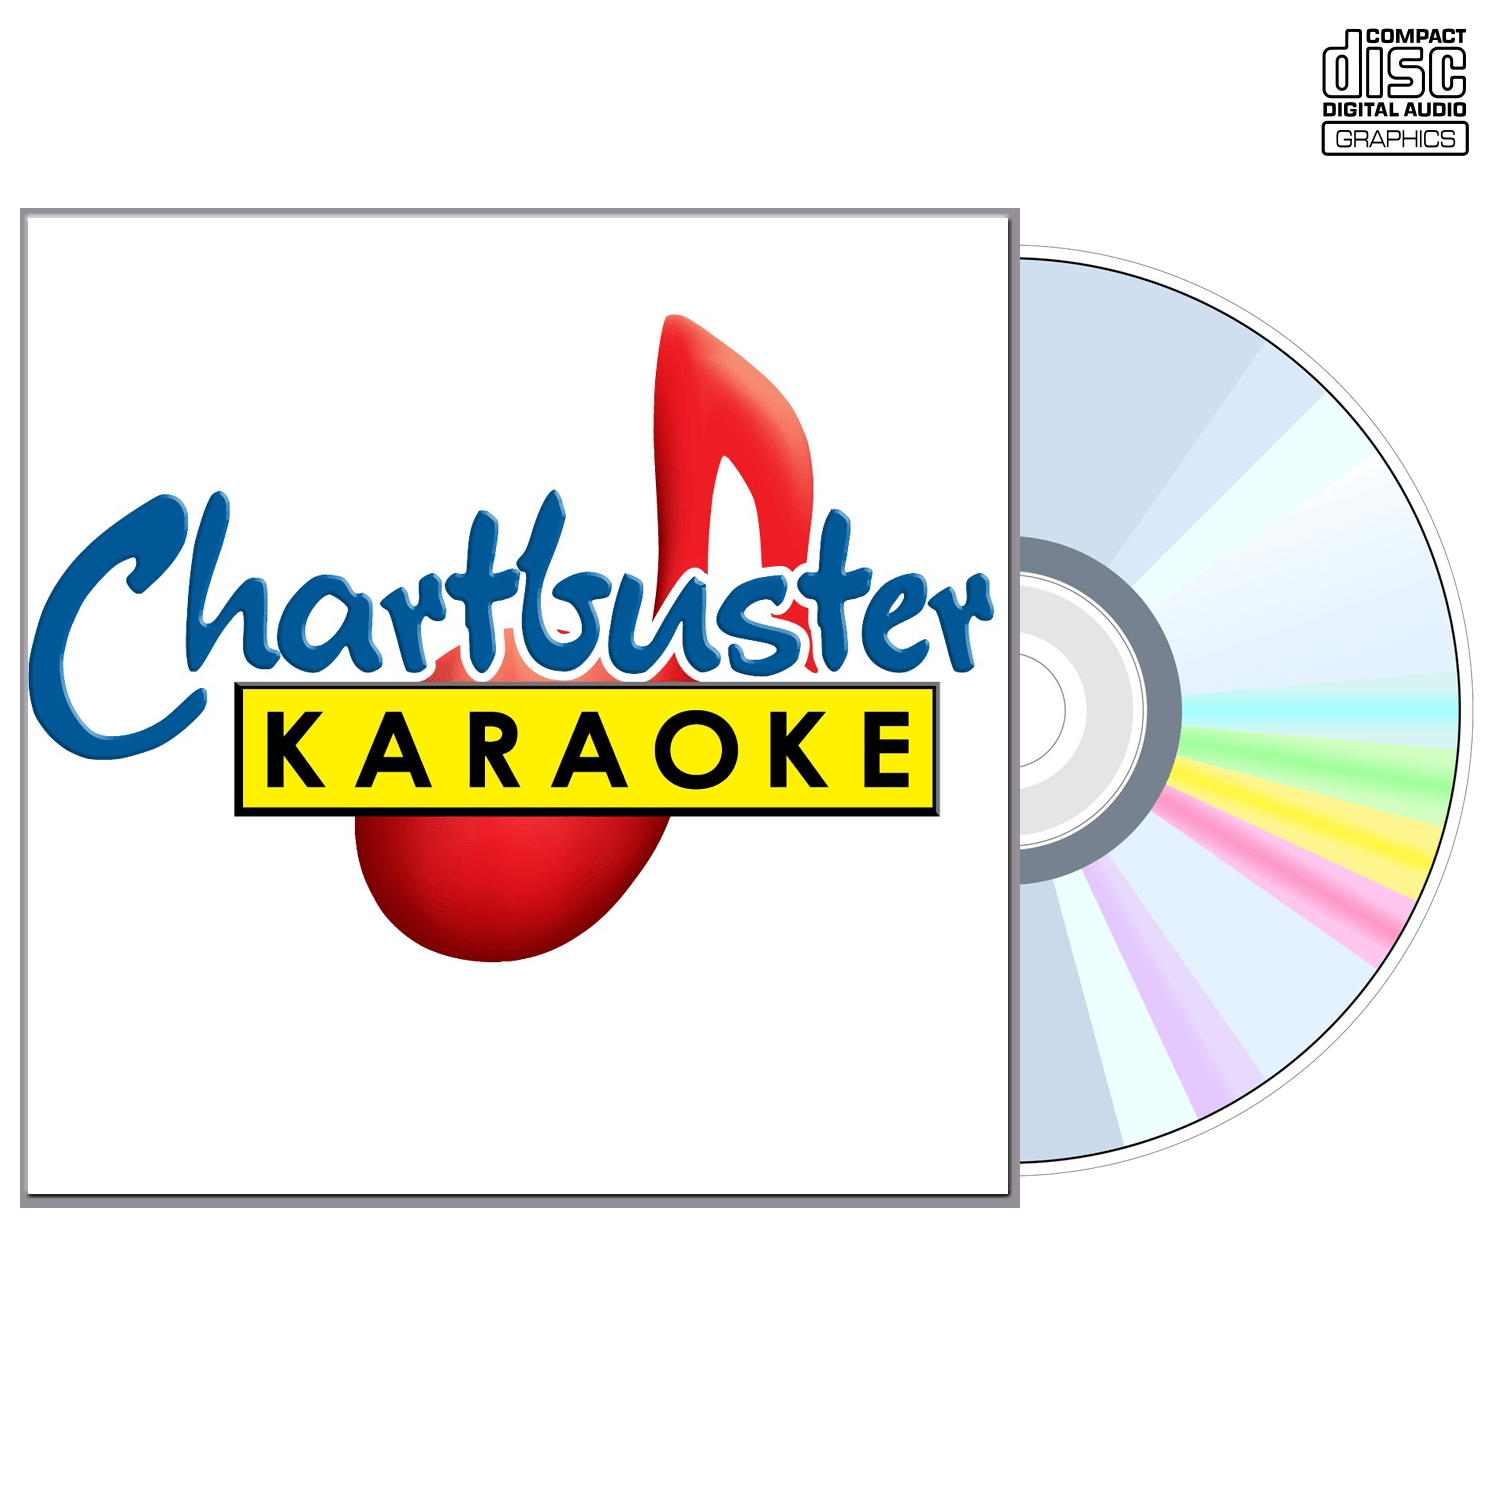 The Bangles - CD+G - Chartbuster Karaoke - Karaoke Home Entertainment